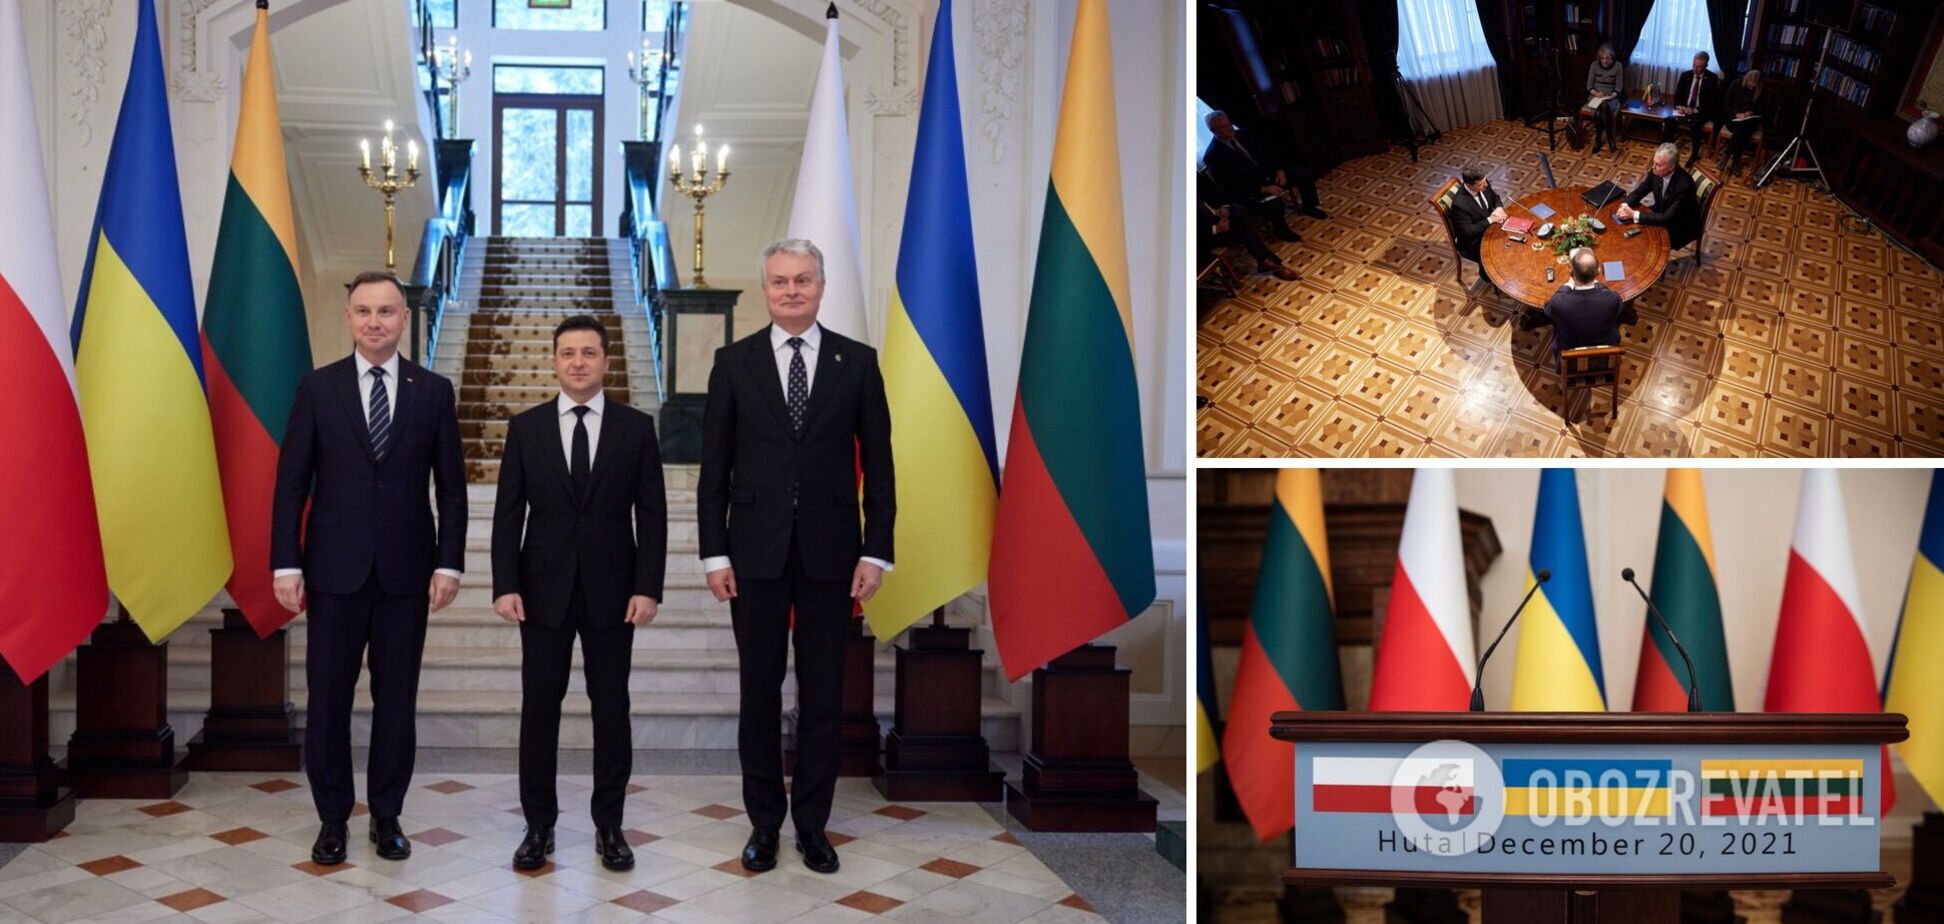 Зеленський провів зустріч із лідерами Литви та Польщі